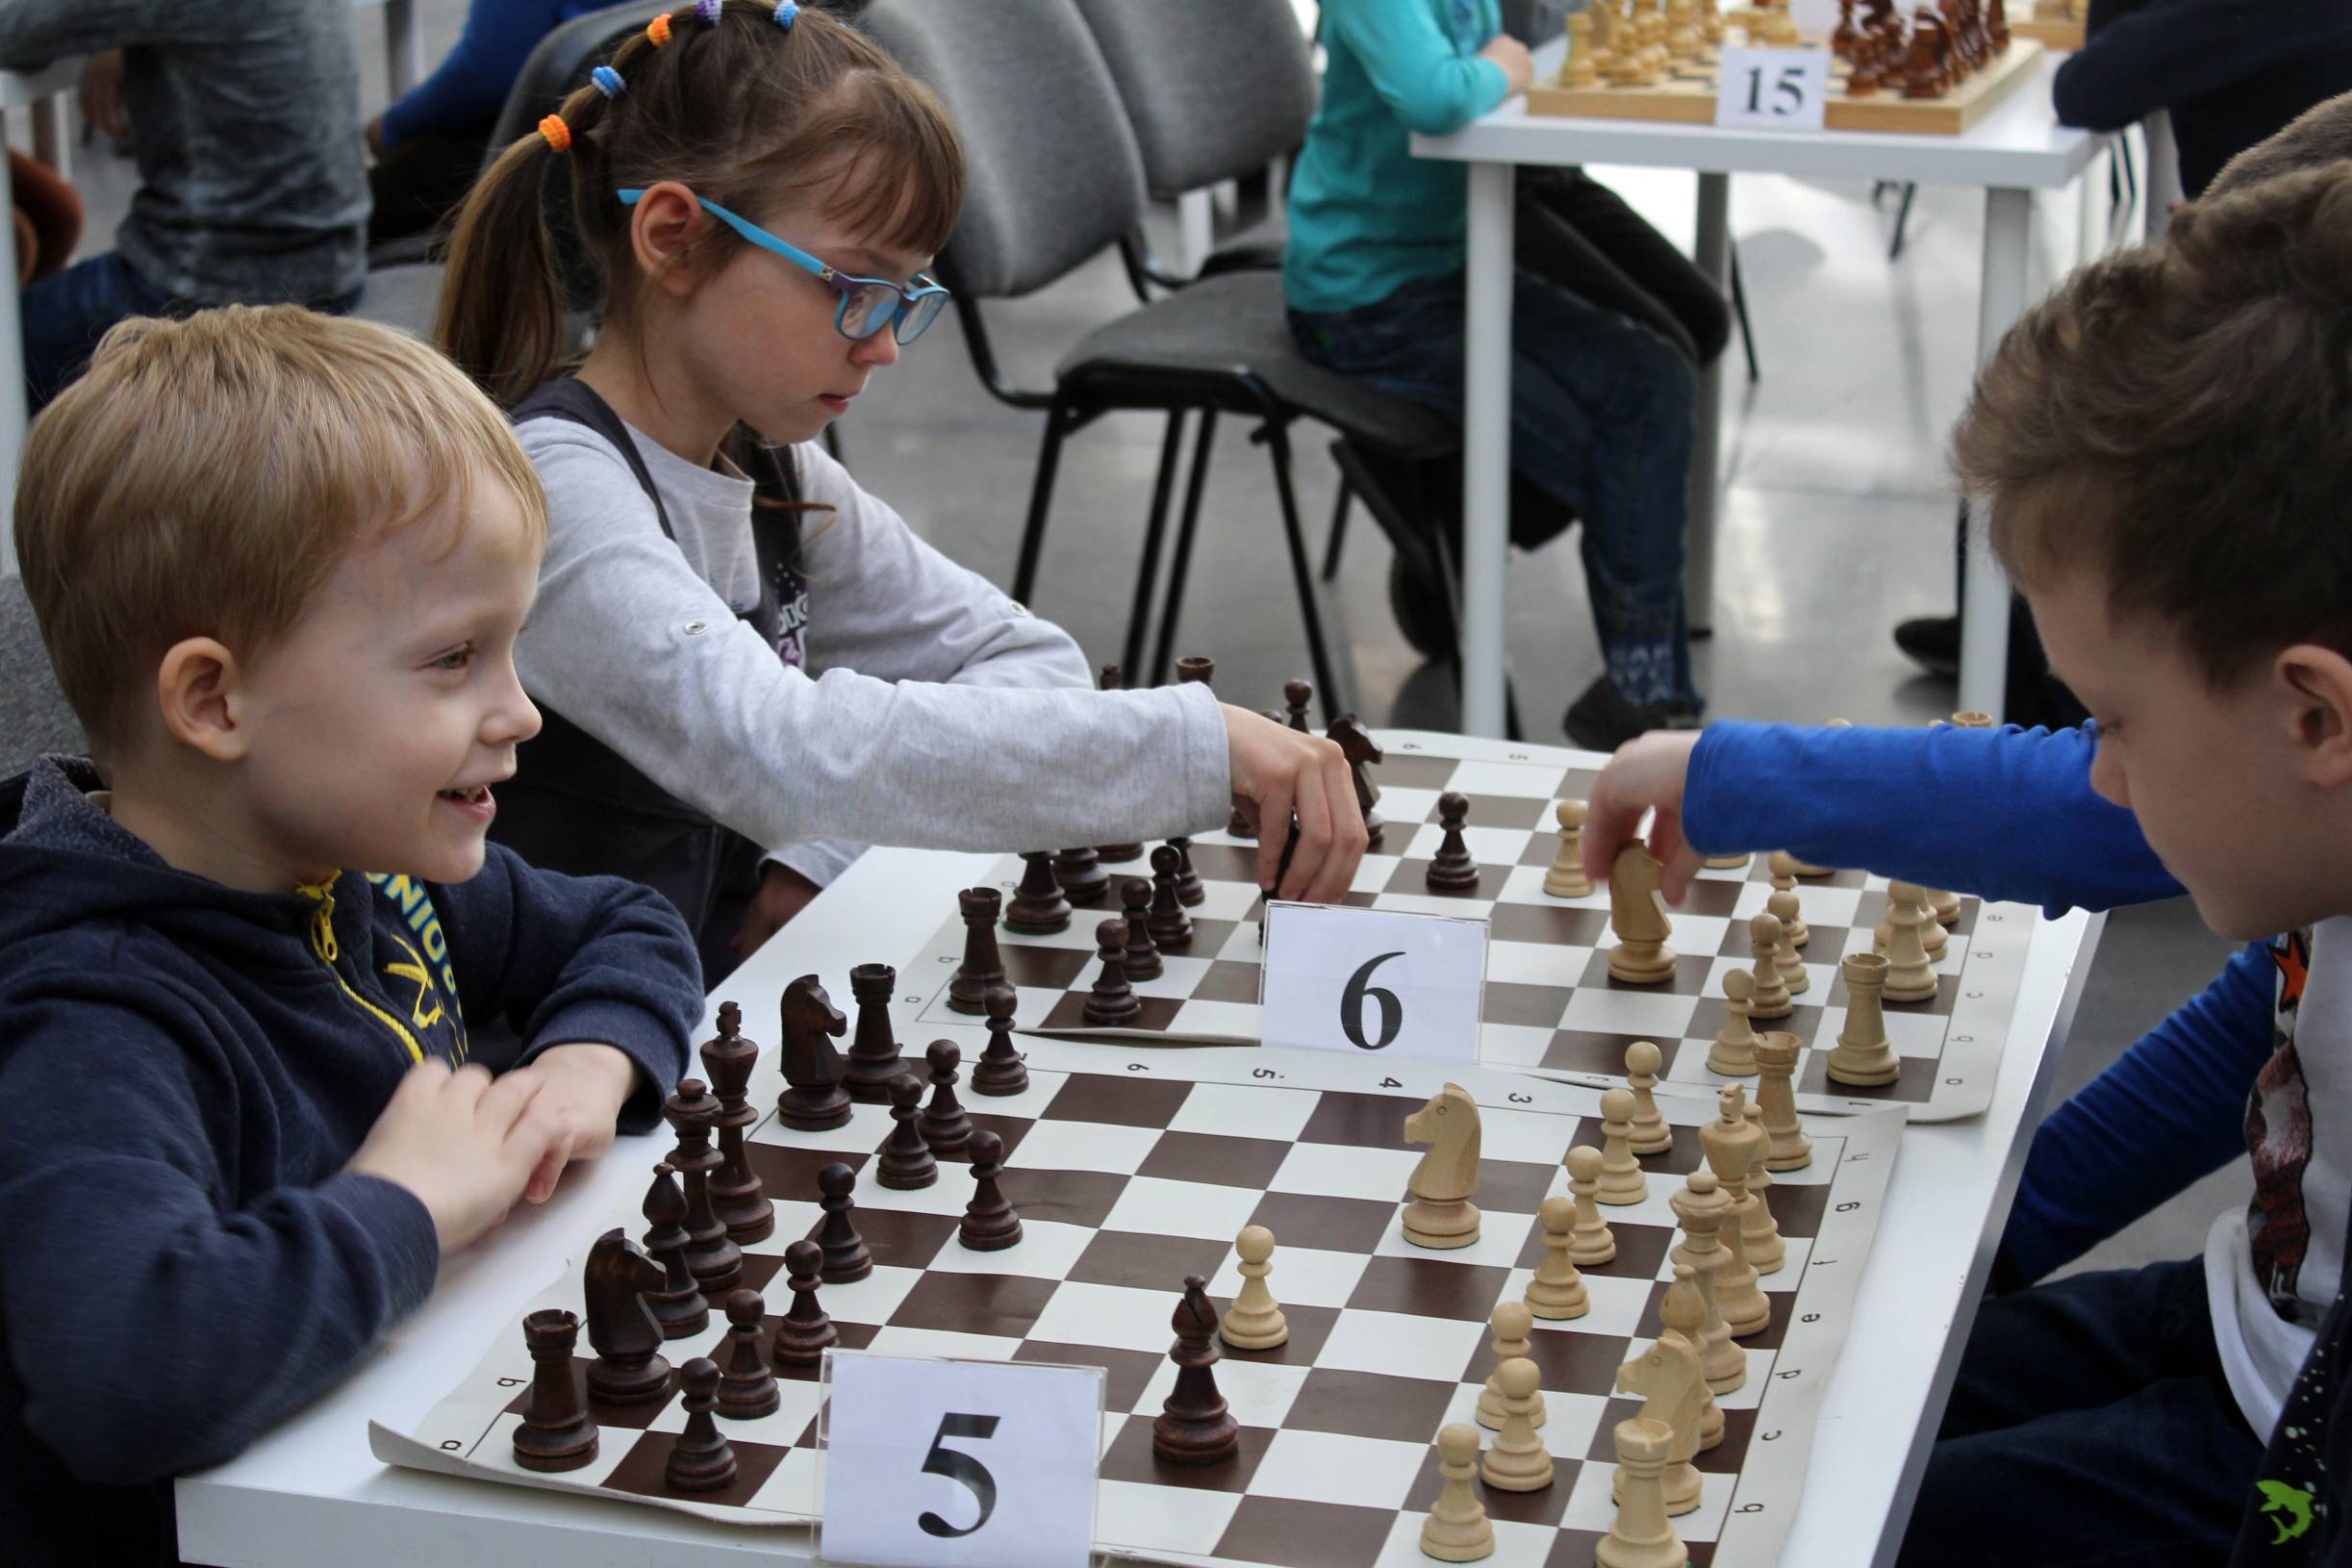 Обучение шахматам онлайн или эта книга научить играть в шахматы детей и родителей - детско-юношеская комиссия санкт-петербургской шахматной федерации